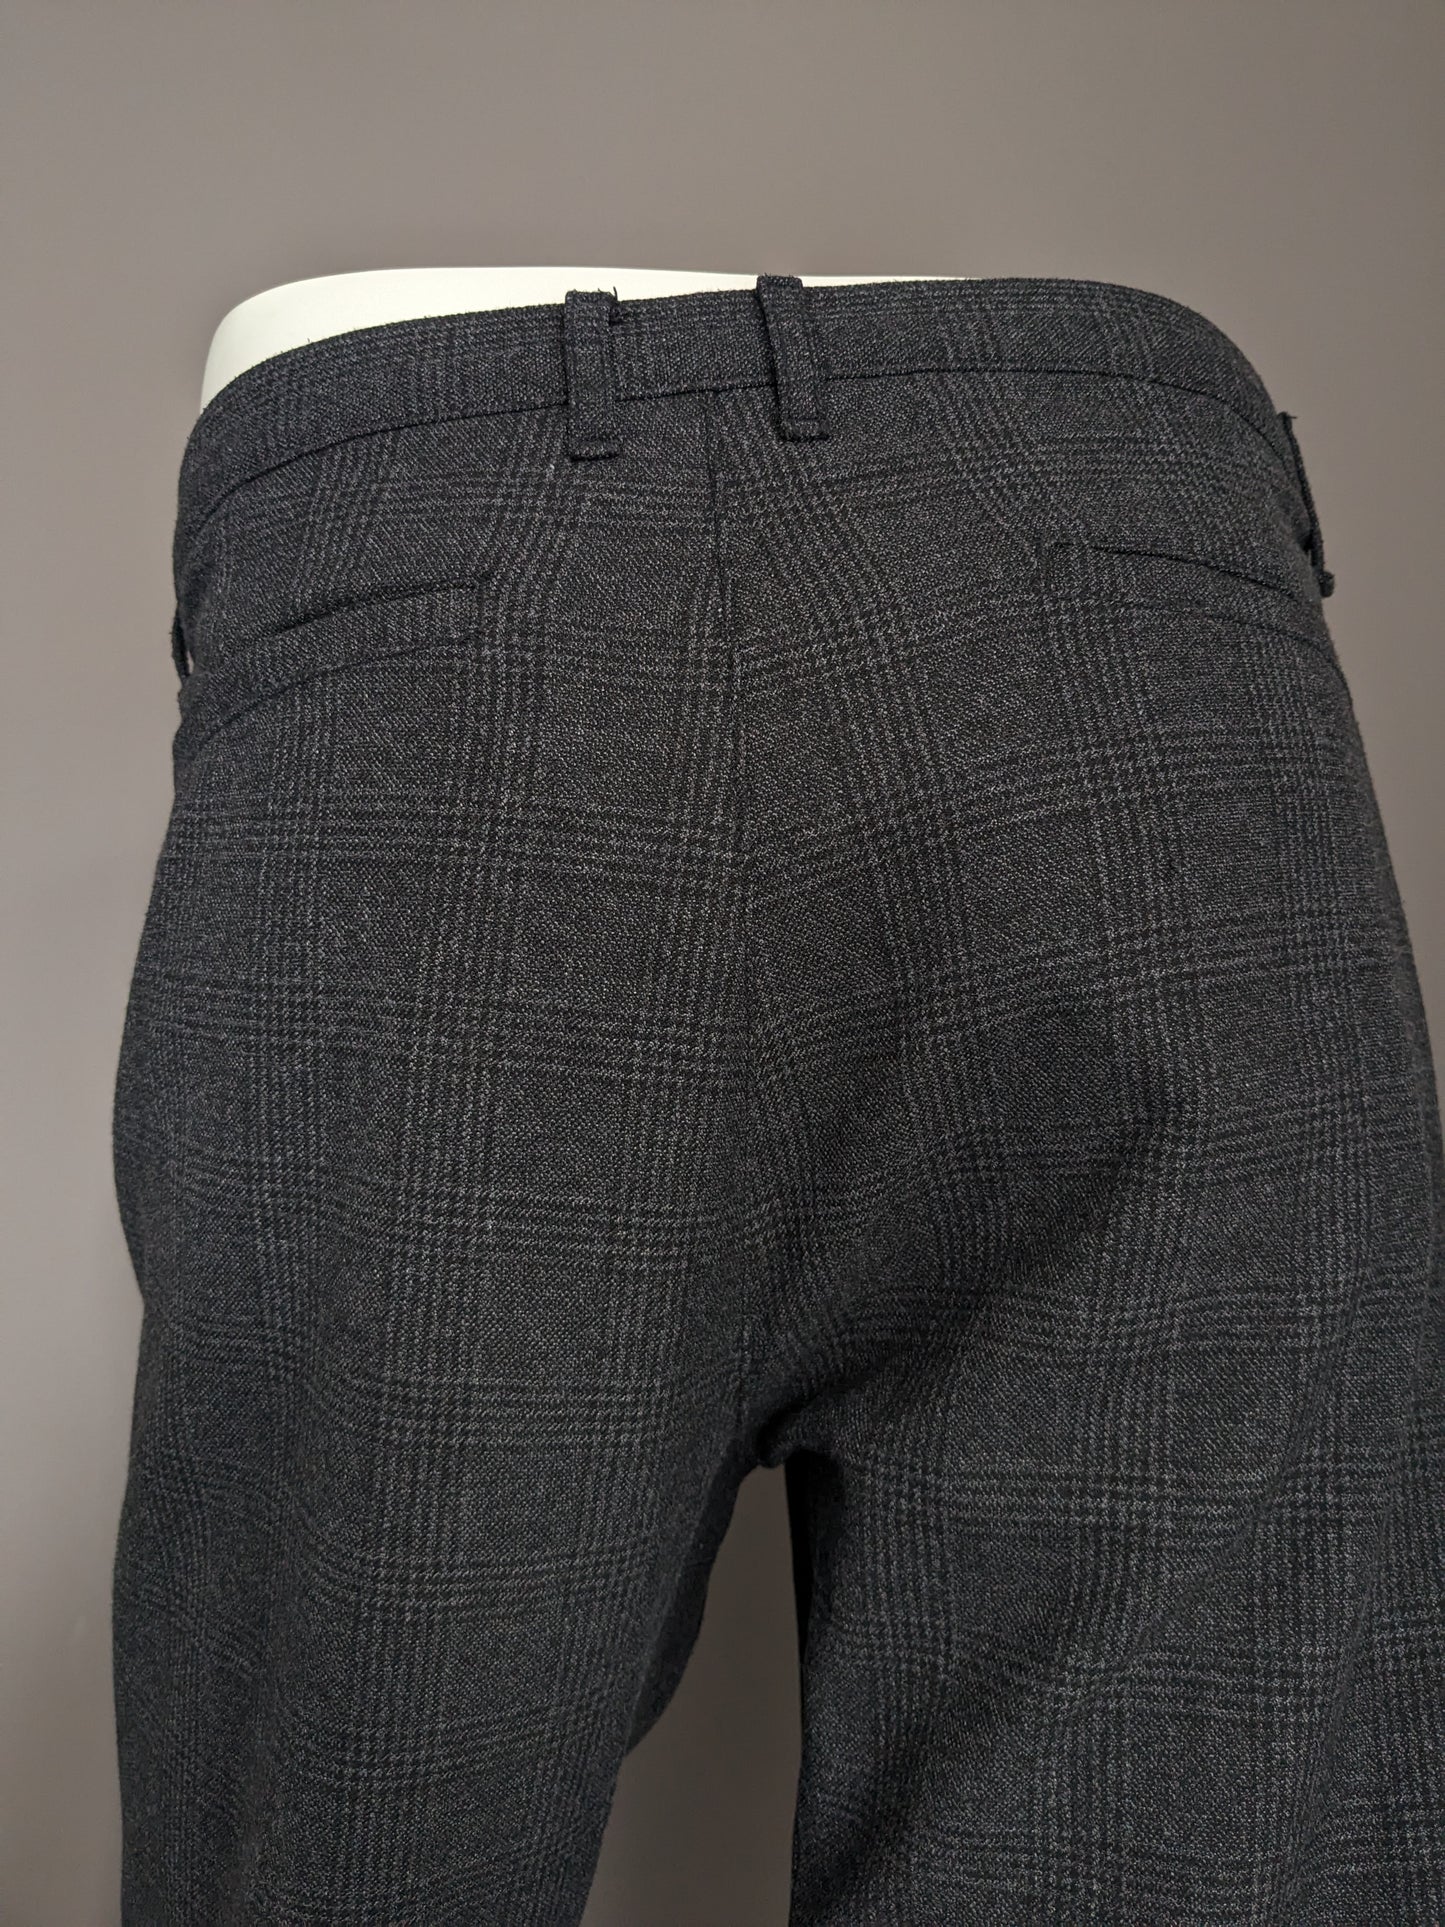 Pantaloni / pantaloni LCW Vision. Black grigio controllato. Fit slim ritagliato. W36 - L30.